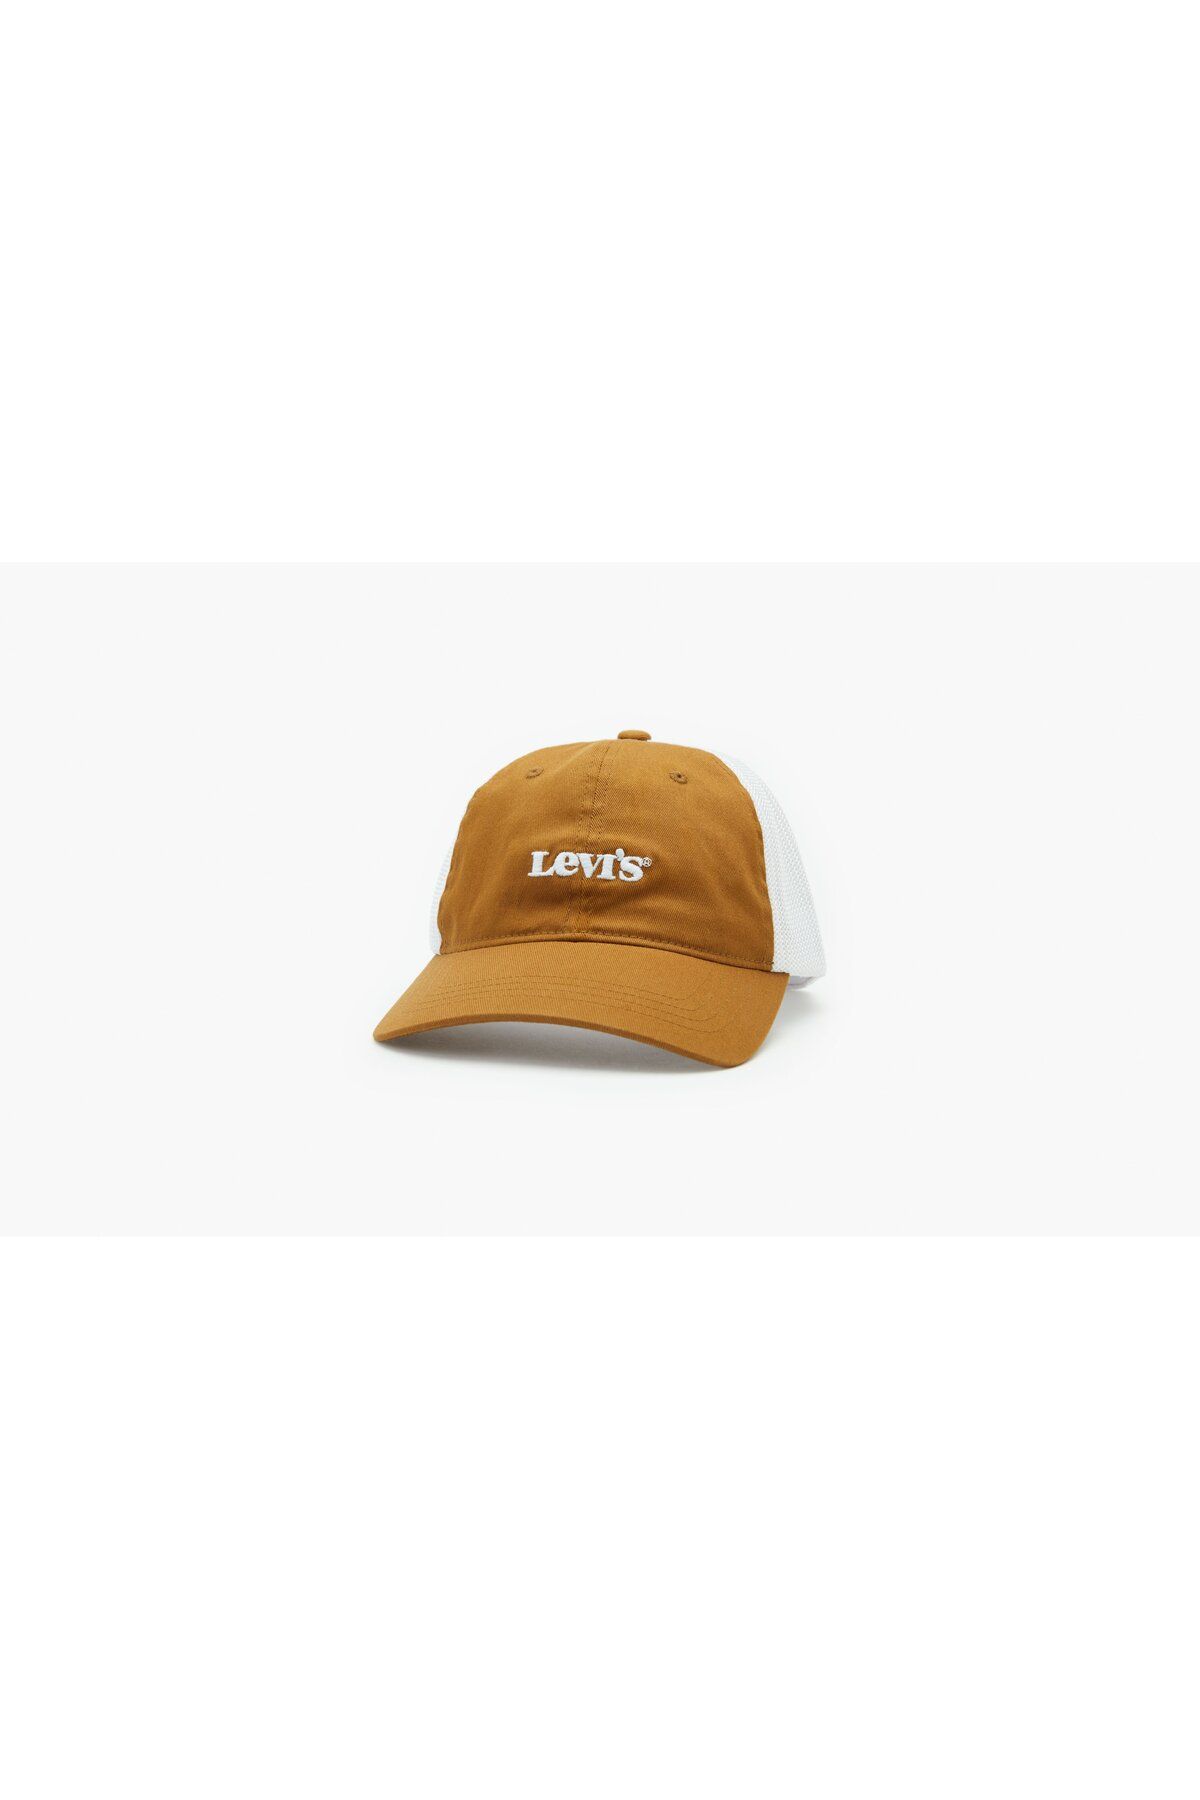 Levi's ® Erkek Mesh Back Baseball Şapka - Vintage Modern